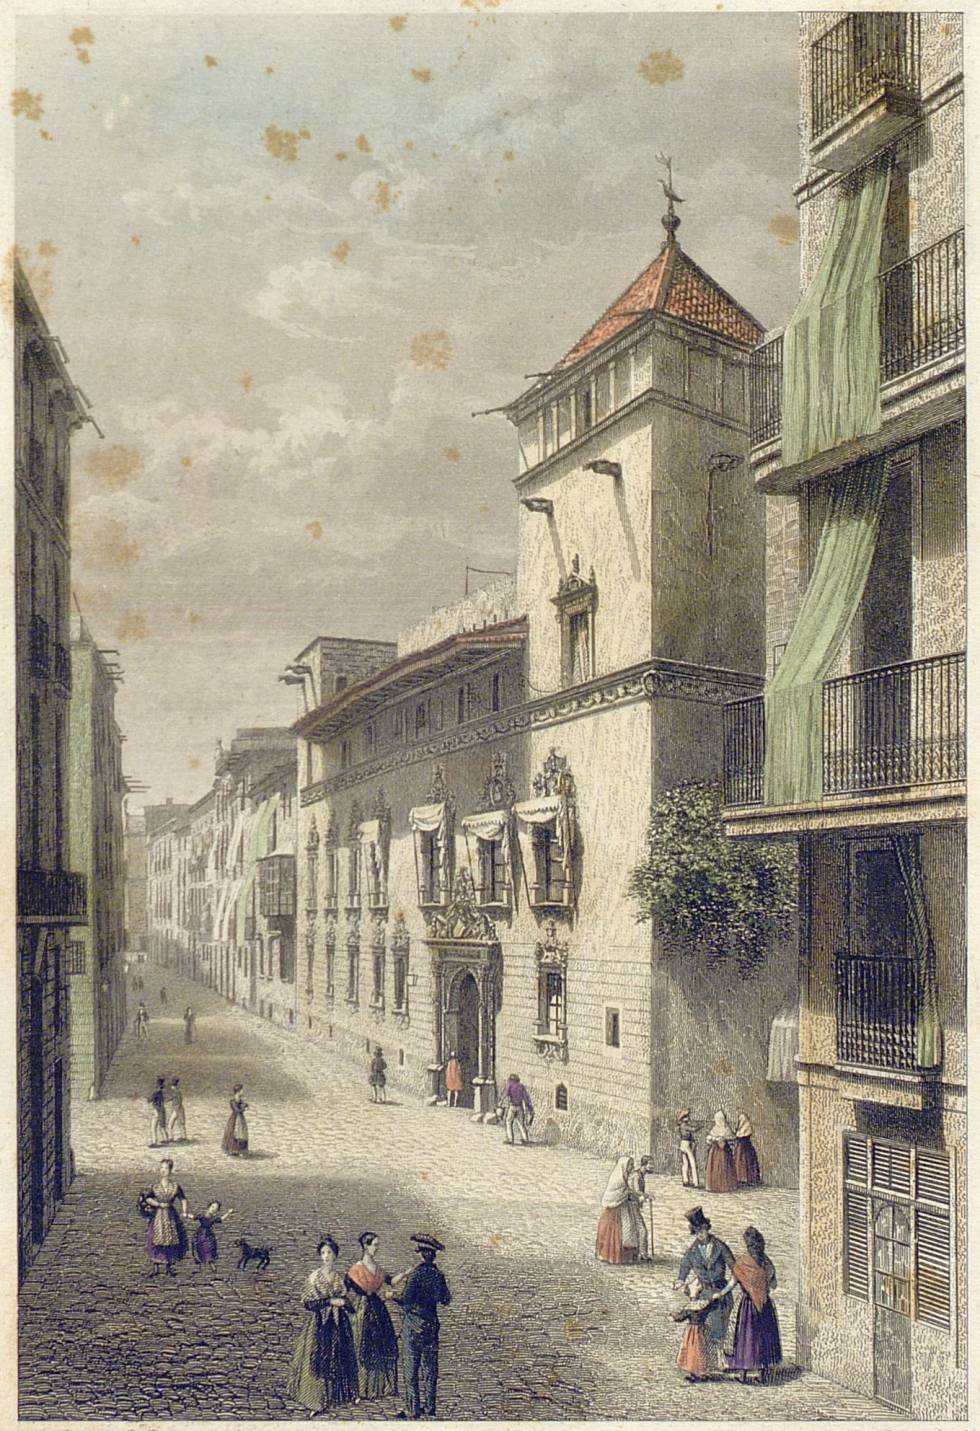 La desaparecida casa Gralla, en un aguafuerte de 1842 de Antoni Roca.